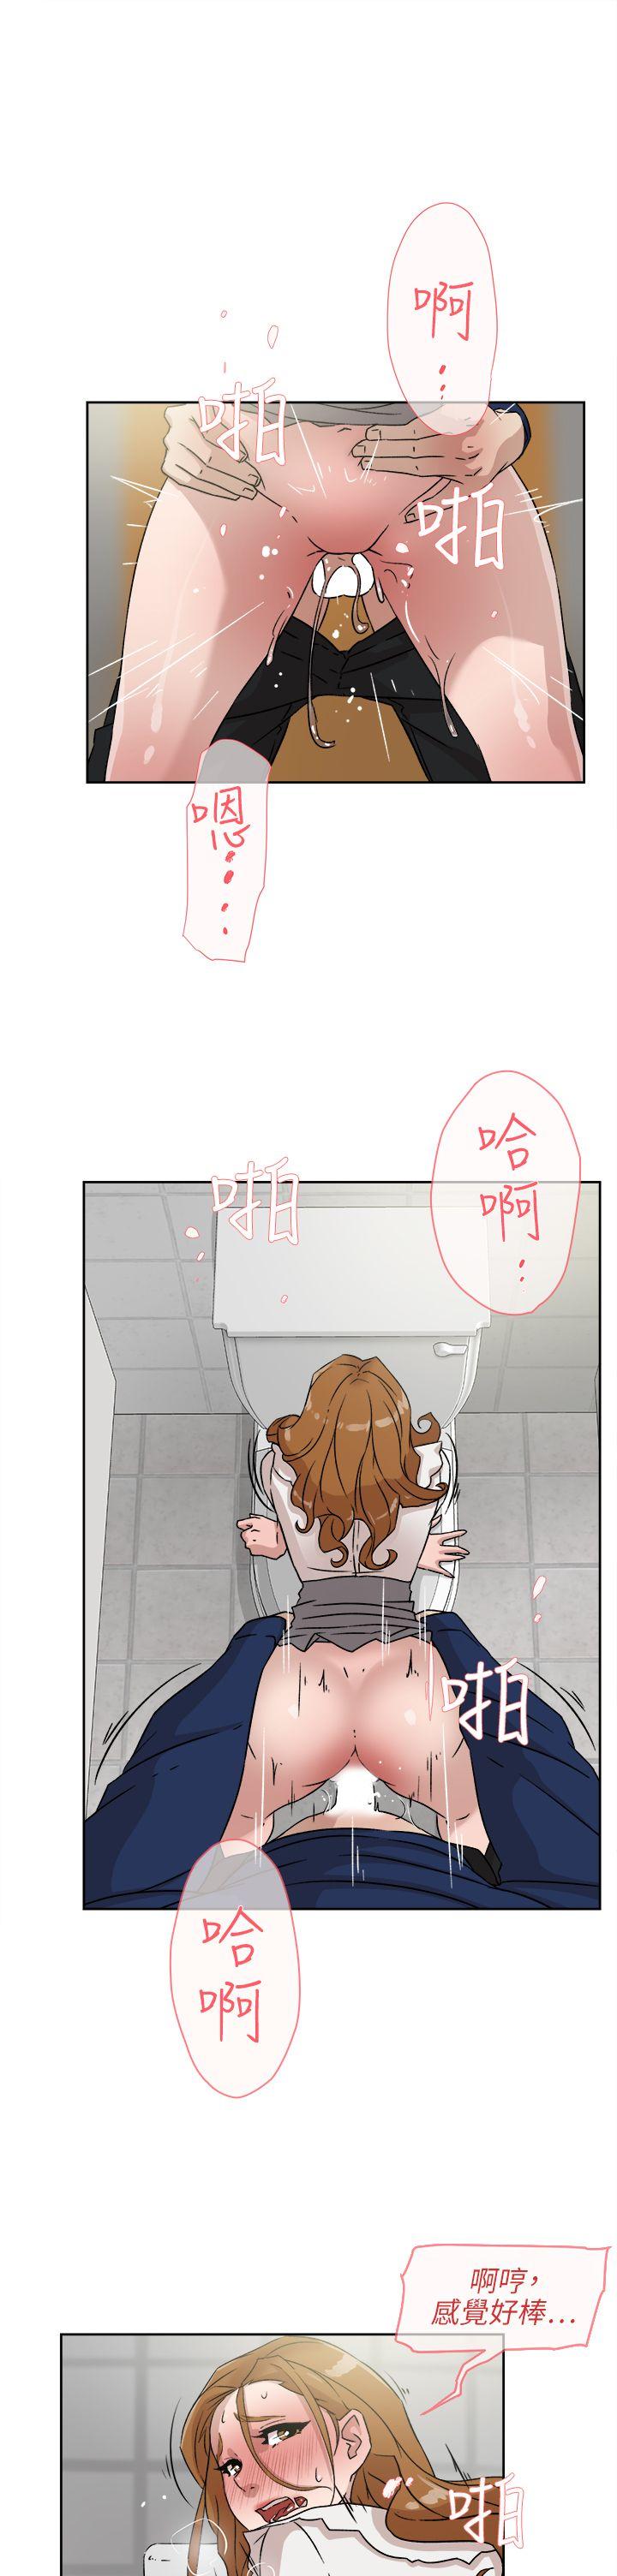 韩国污漫画 她的高跟鞋(無刪減) 第47话 3